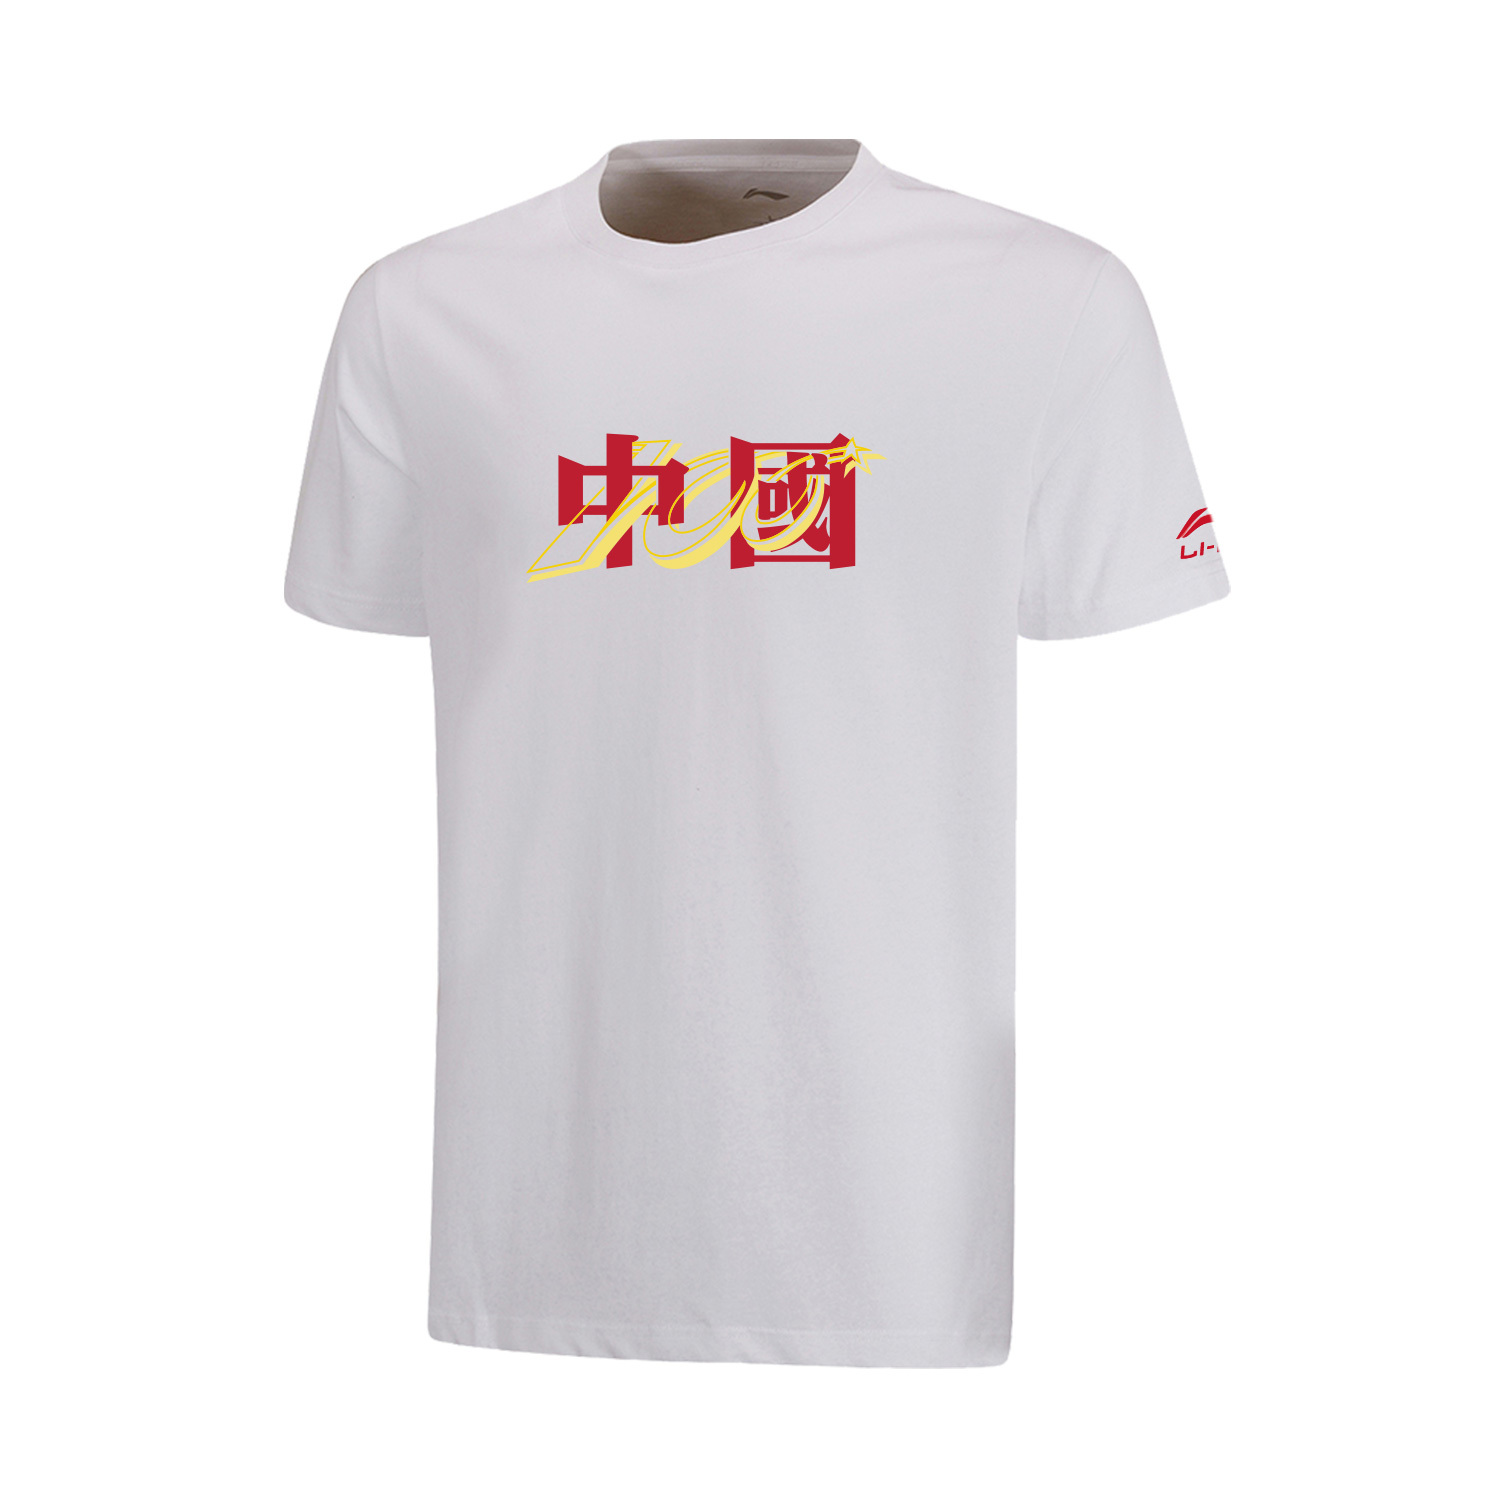 LI-NING 李宁 团购系列 男 短袖文化衫 标准白 黑色 亮霓虹 AHSRA40-1-2-3